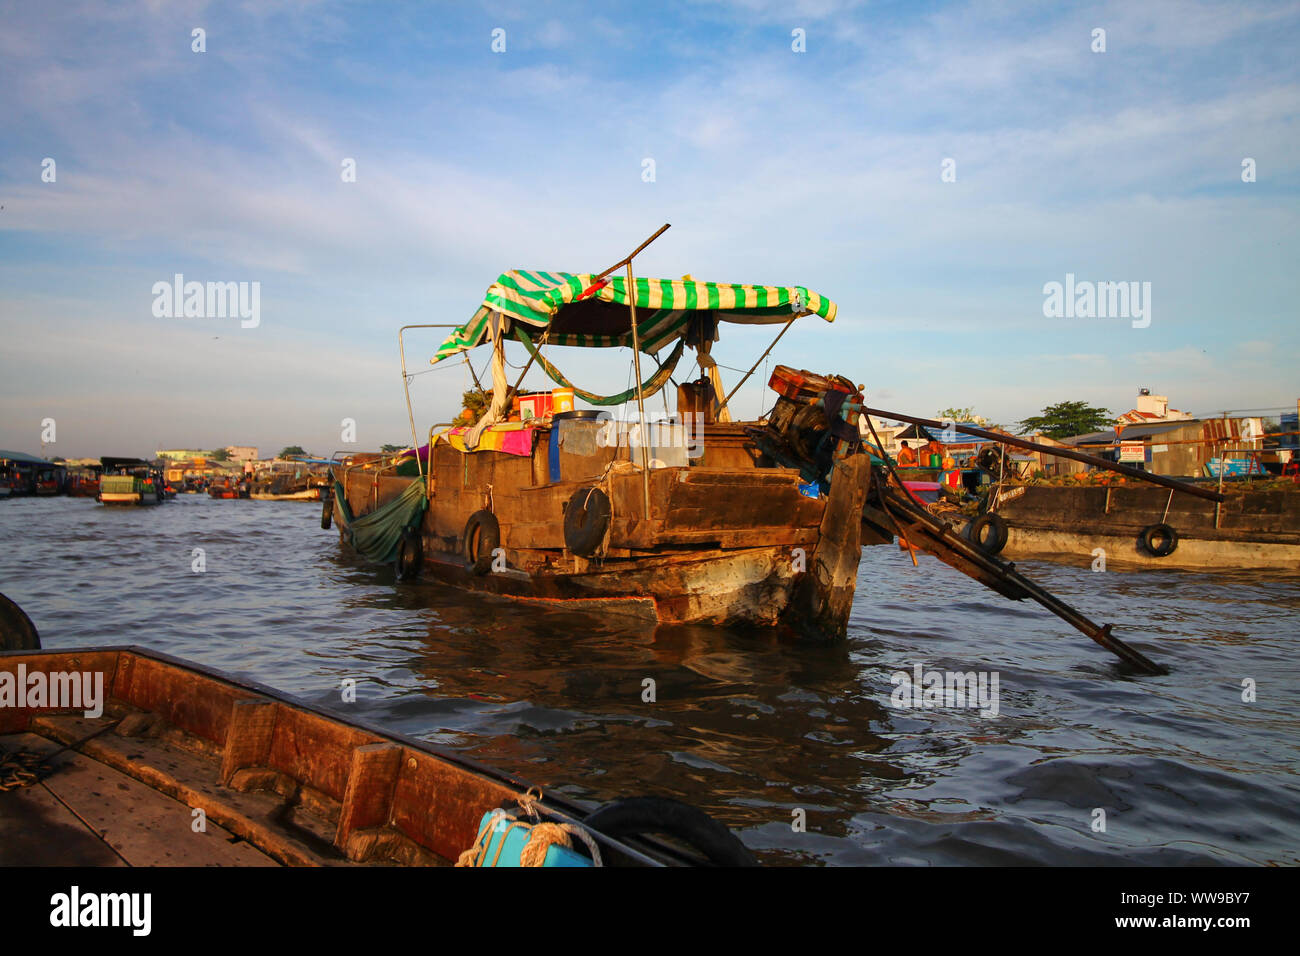 Marché flottant de Cai Rang traditionnel dans la province de Can Tho, Delta du Mékong Vietnam qui est un must pour les voyageurs Banque D'Images